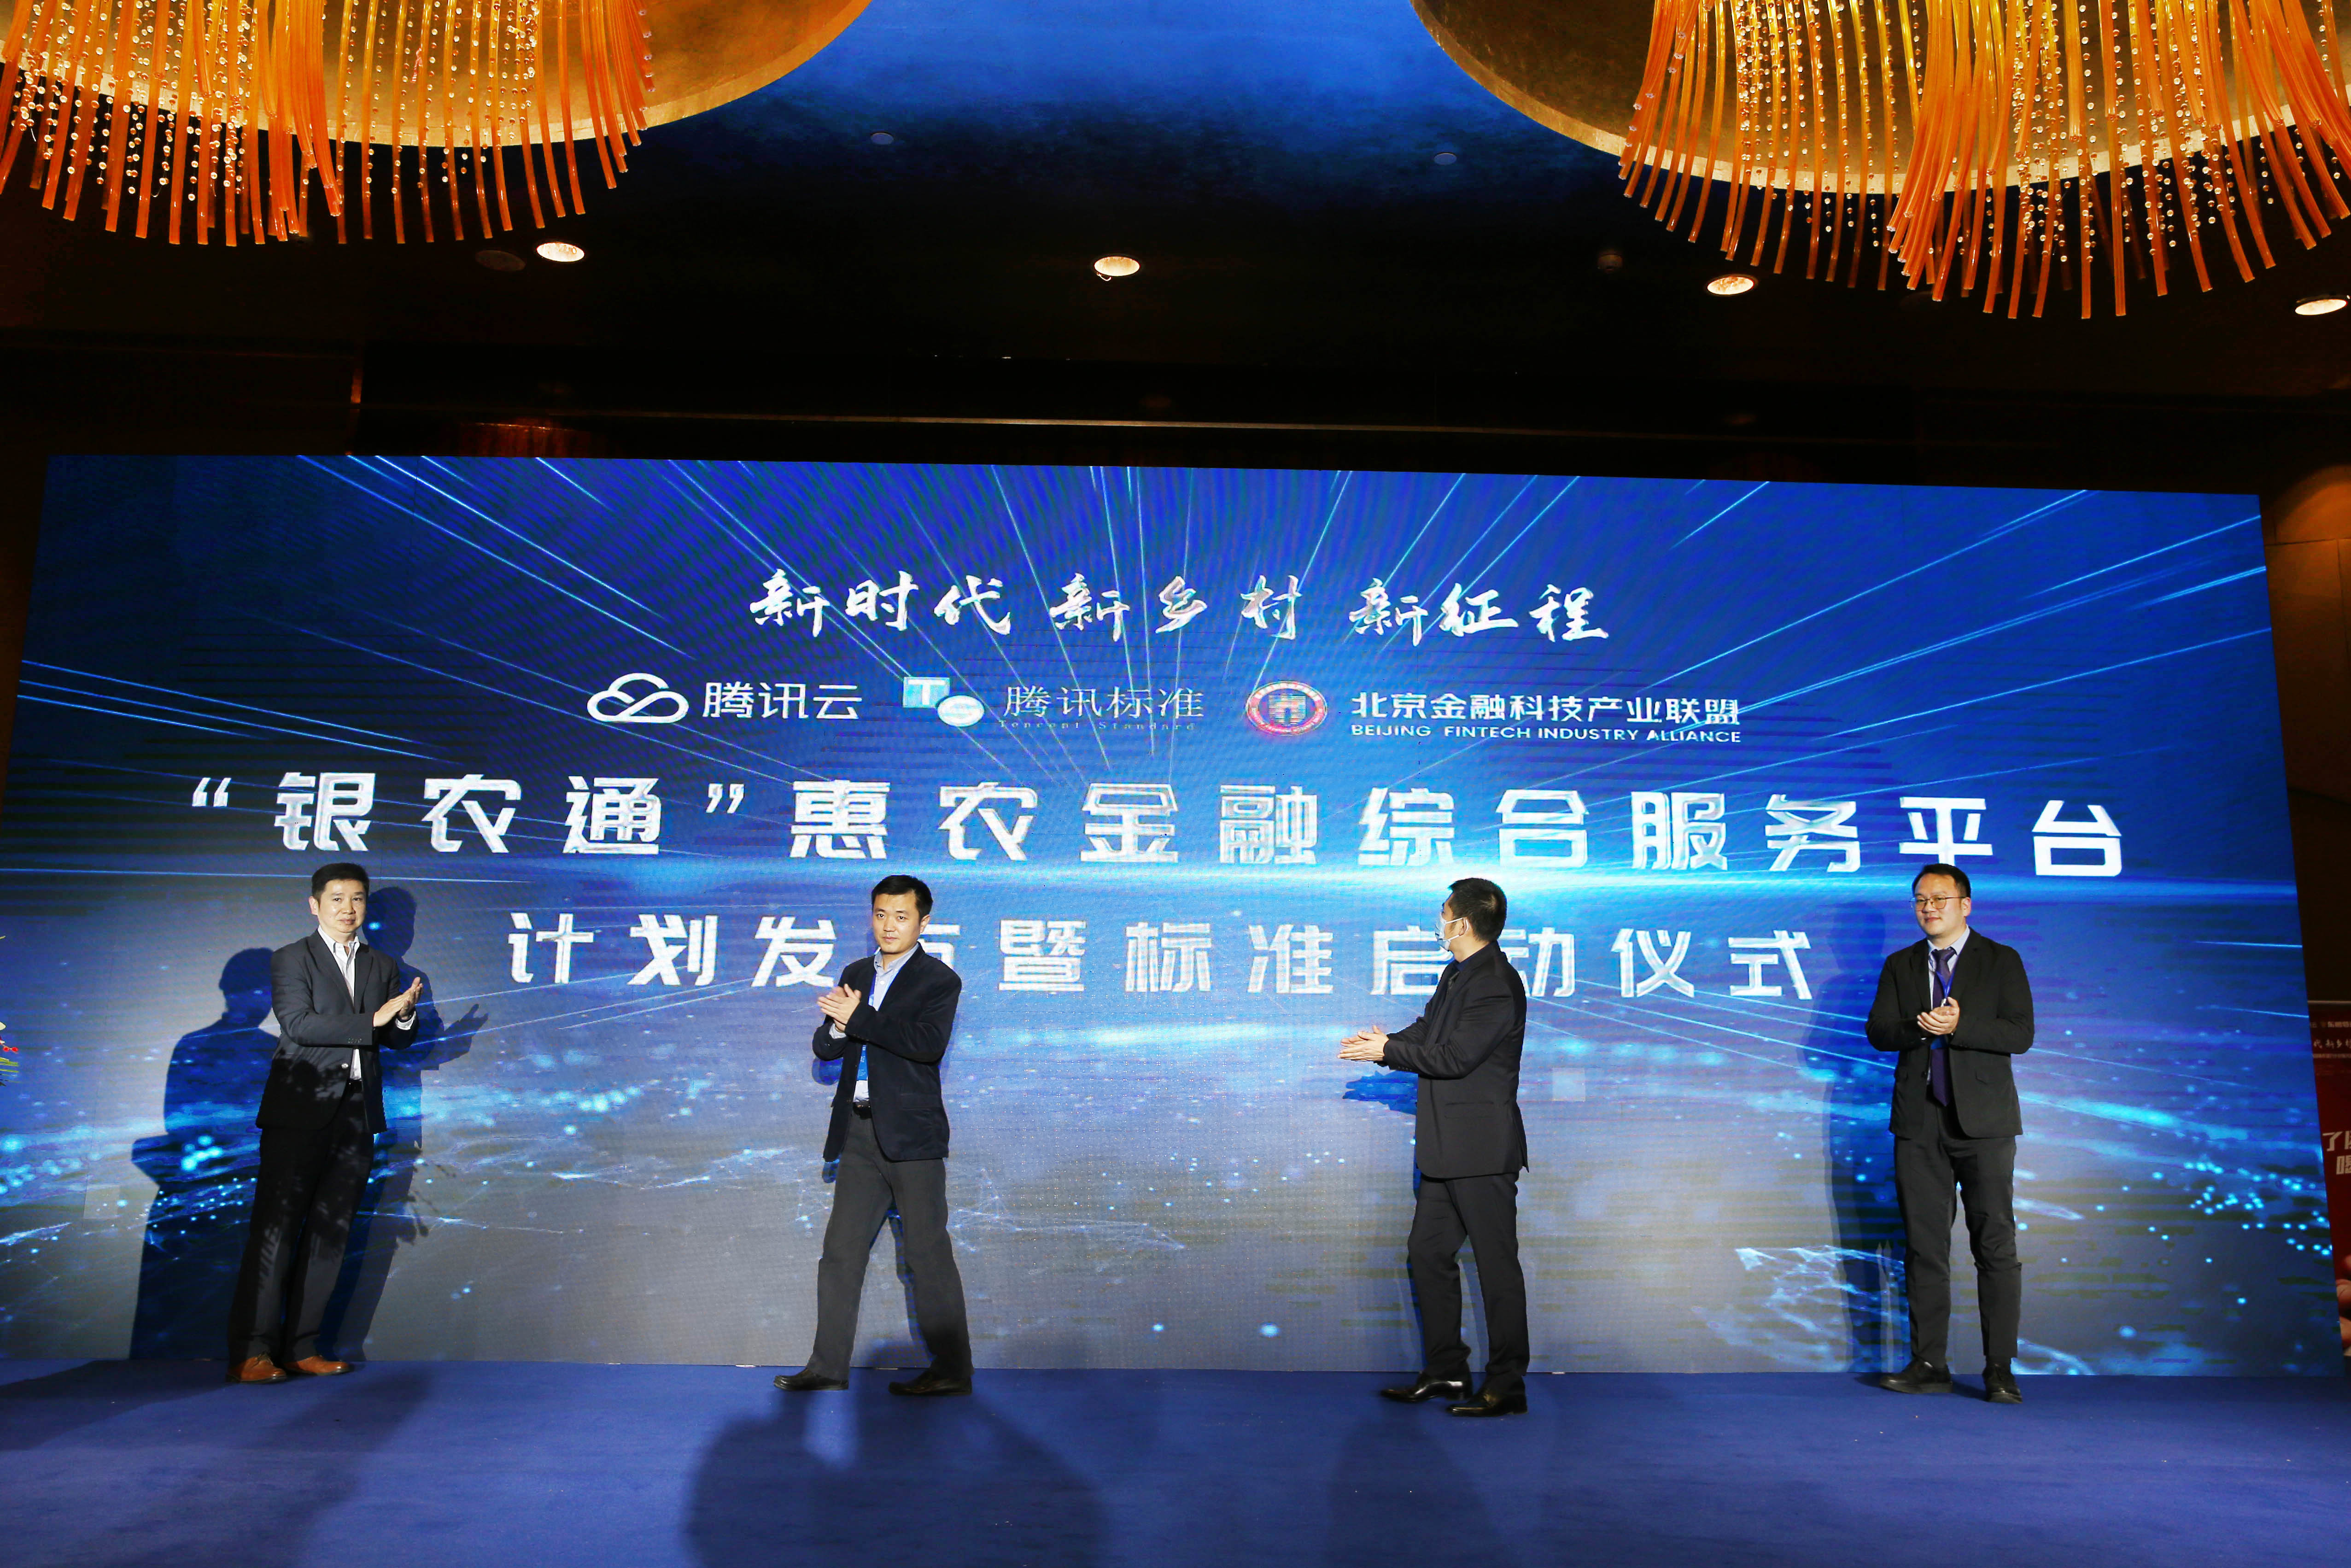 腾讯云发布“银农通”金融服务平台 打造1000个乡村“金融+”服务站